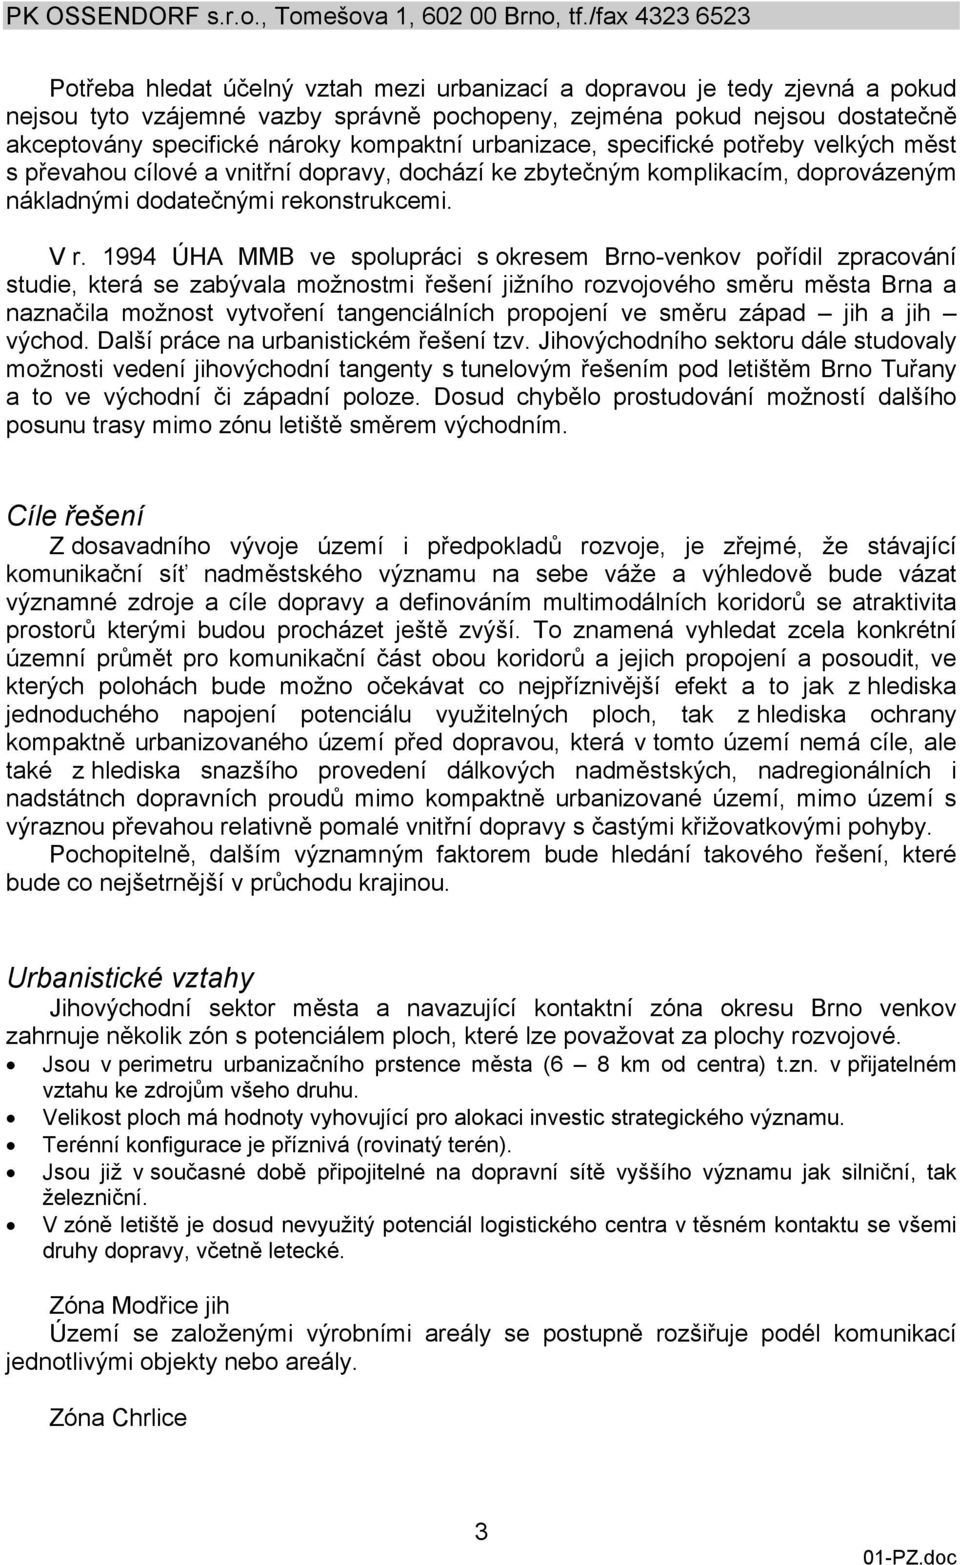 1994 ÚHA MMB ve spolupráci s okresem Brno-venkov pořídil zpracování studie, která se zabývala možnostmi řešení jižního rozvojového směru města Brna a naznačila možnost vytvoření tangenciálních